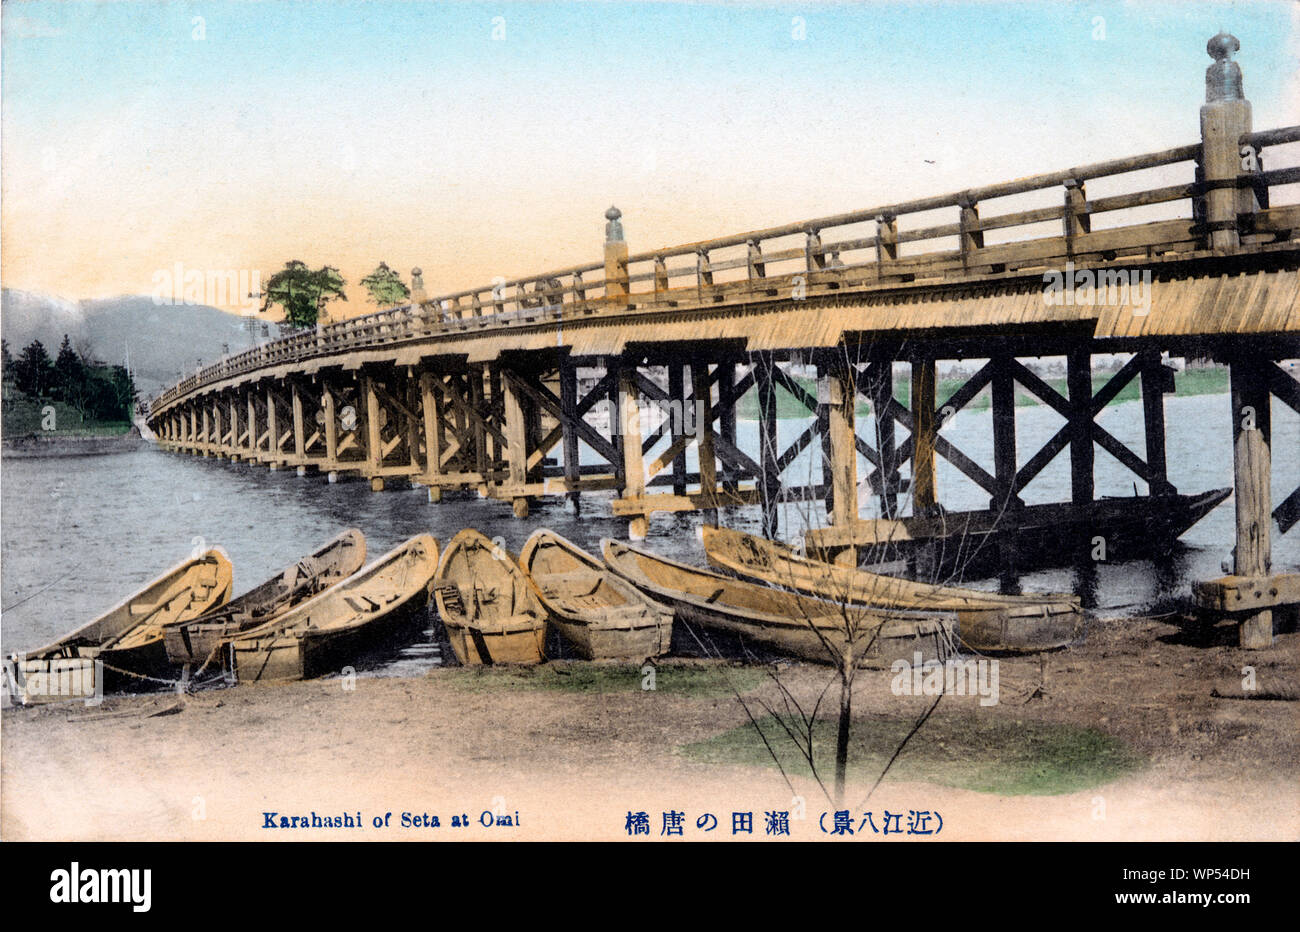 [ 1910 - Japon ] pont en bois Japonais - Seta pas Karahashi Bridge à Omi, préfecture de Shiga. Le pont est l'un des huit vues d'OMI (OMI Hakkei). L'Omi Hakkei sont les huit plus belles scènes dans la partie sud du lac Biwa. Ils sont soupçonnés d'avoir été sélectionné au 13ème siècle et est devenu particulièrement connu à travers estampes du même nom de l'artiste japonais ukiyo-e Ando Hiroshige (1797-1858), également connu sous le nom de Utagawa Hiroshige. 20e siècle vintage carte postale. Banque D'Images